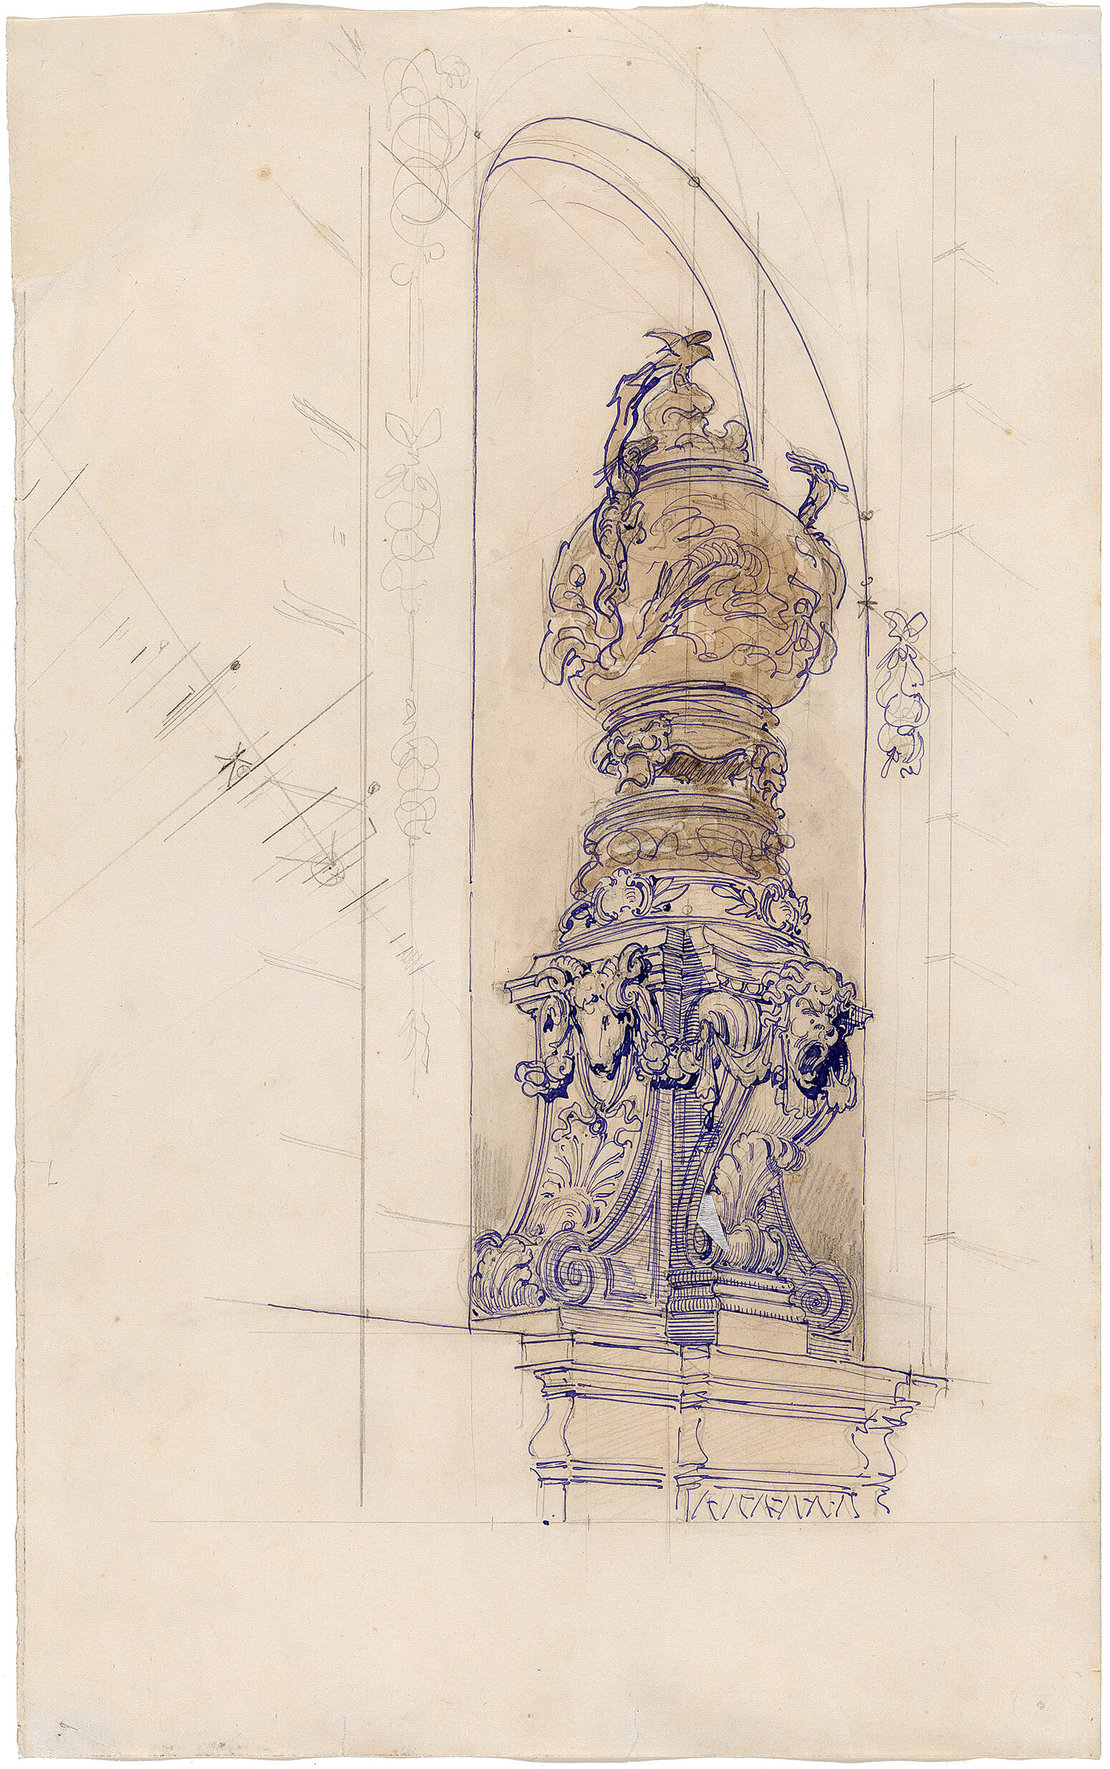 Otto Wagner: Entwurf für den Sockel einer chinesischen Vase an der Fassade der Villa Wagner in Hütteldorf, 1886, Feder, laviert, 34 x 21 cm, Wien Museum 